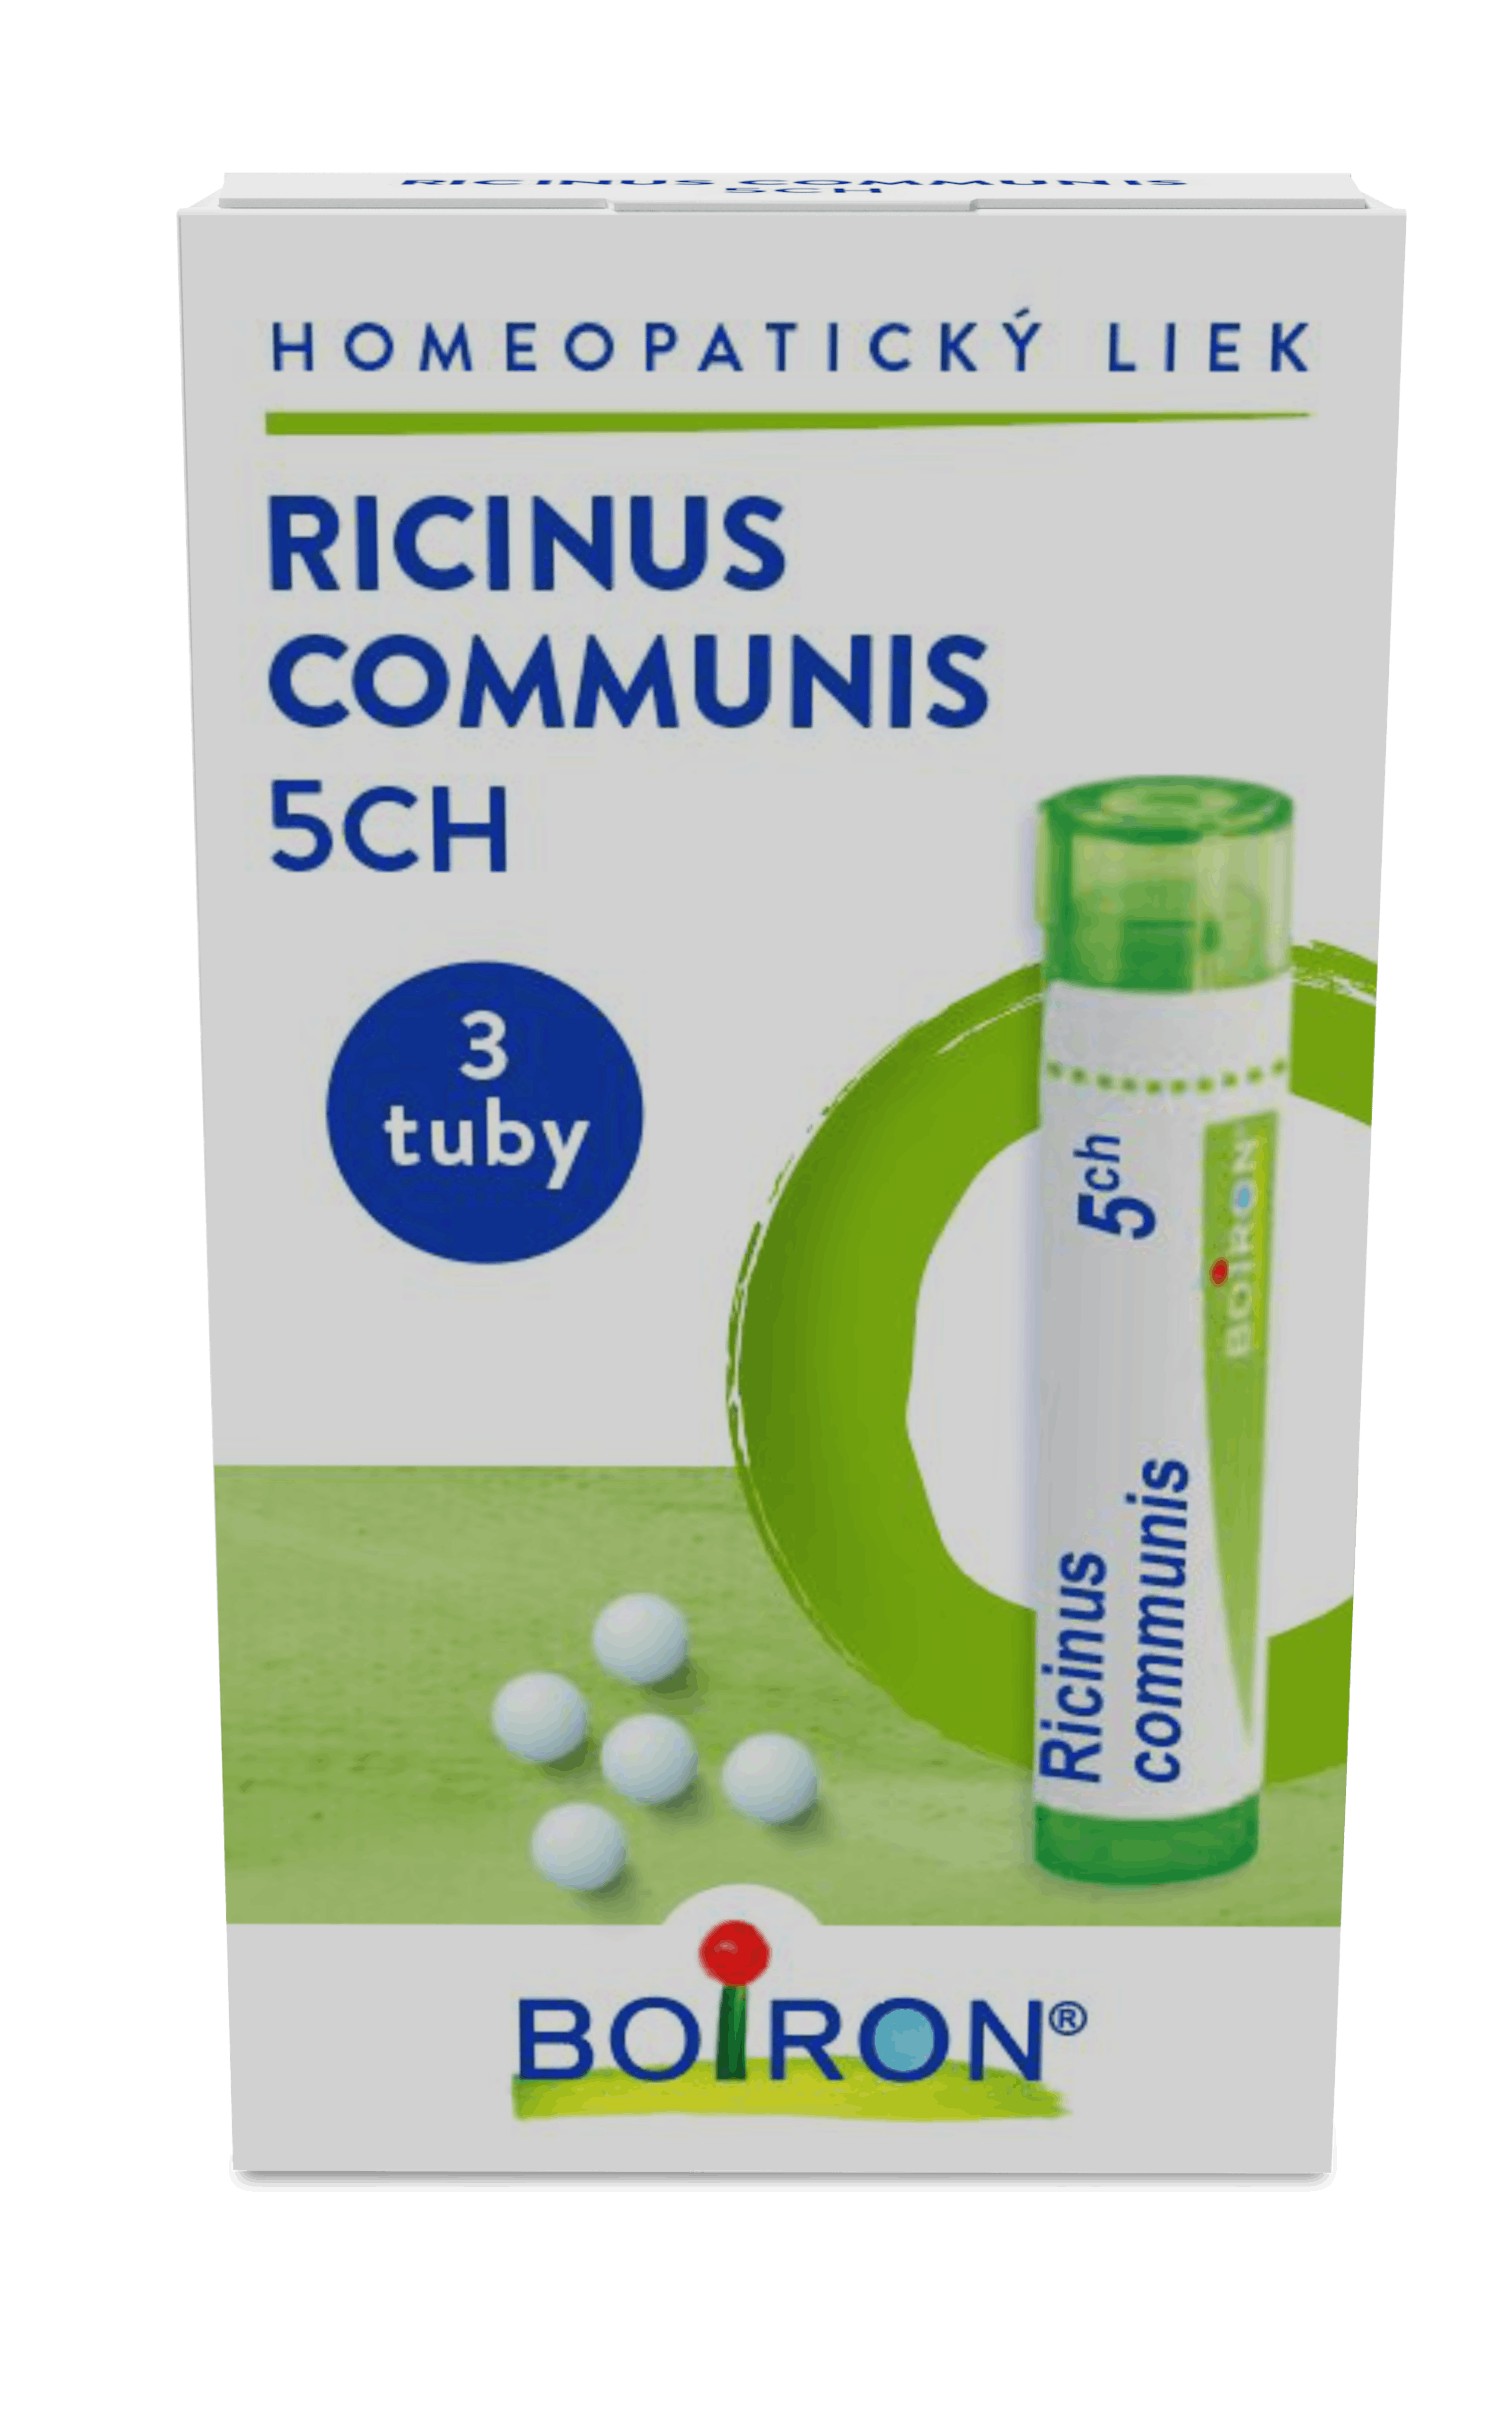 Ricinus communis 5CH